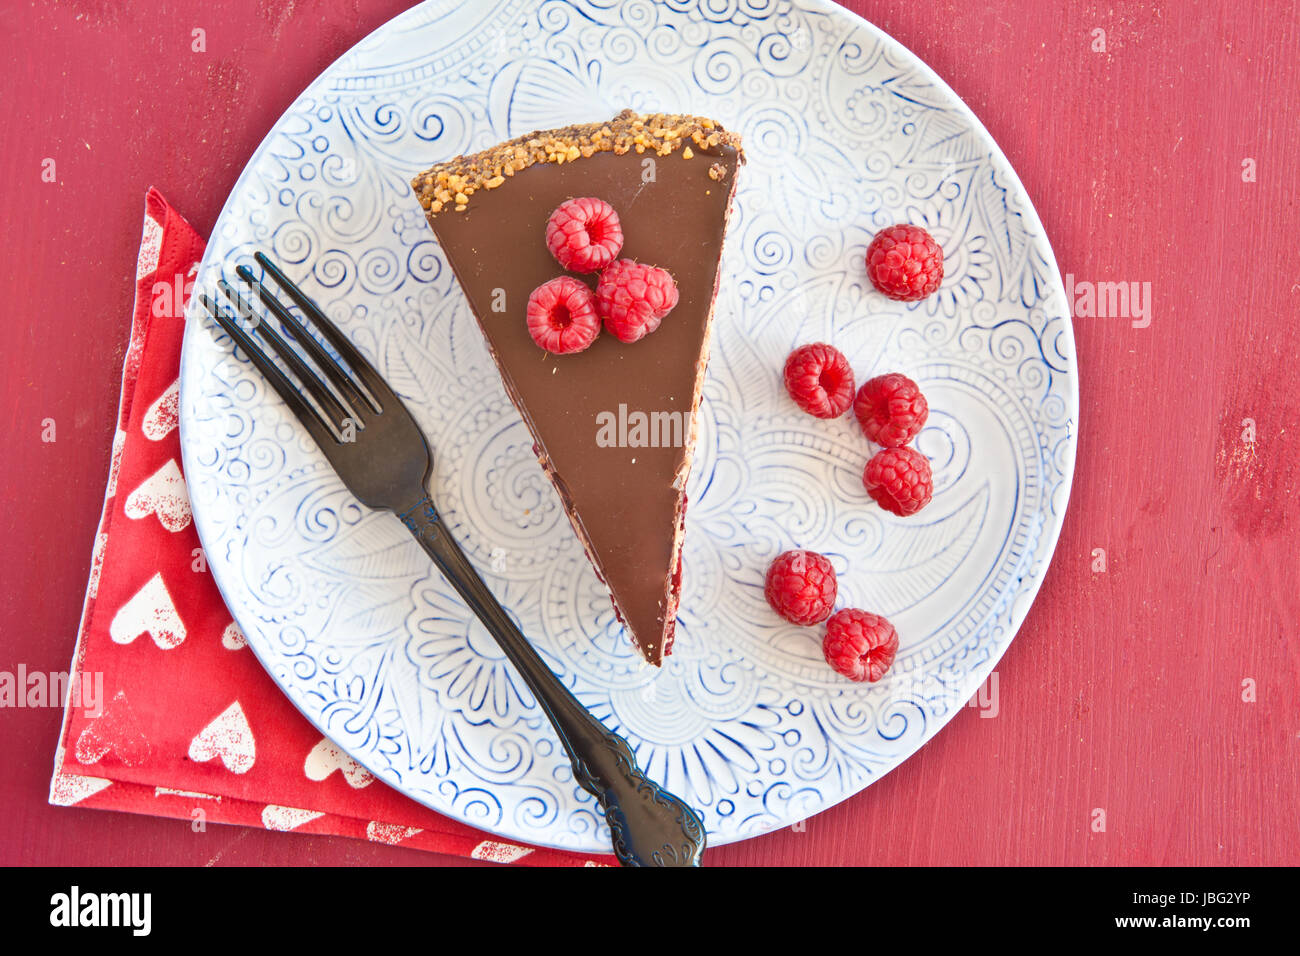 Ein Stueck Torte mit roten Fruechten und Schokolade Foto Stock